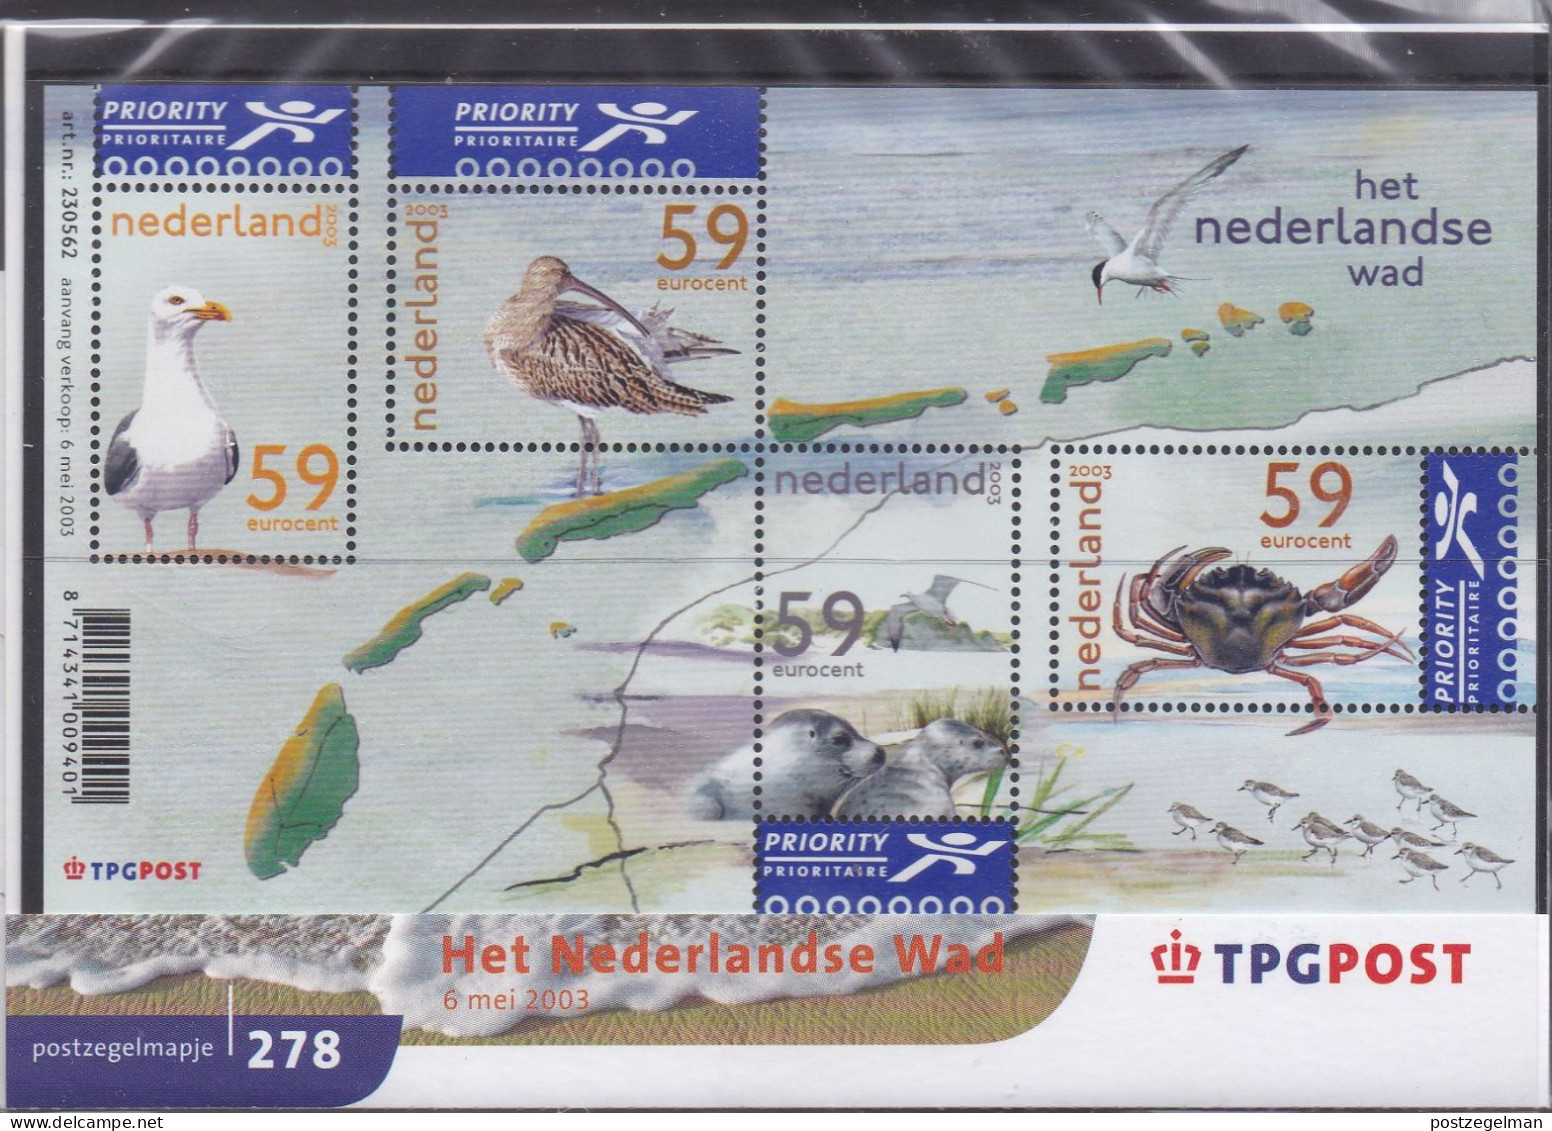 NEDERLAND, 2003, MNH Zegels In Mapje, Nederlandse Wad , NVPH Nrs. 2171, Scannr. M278 - Nuevos